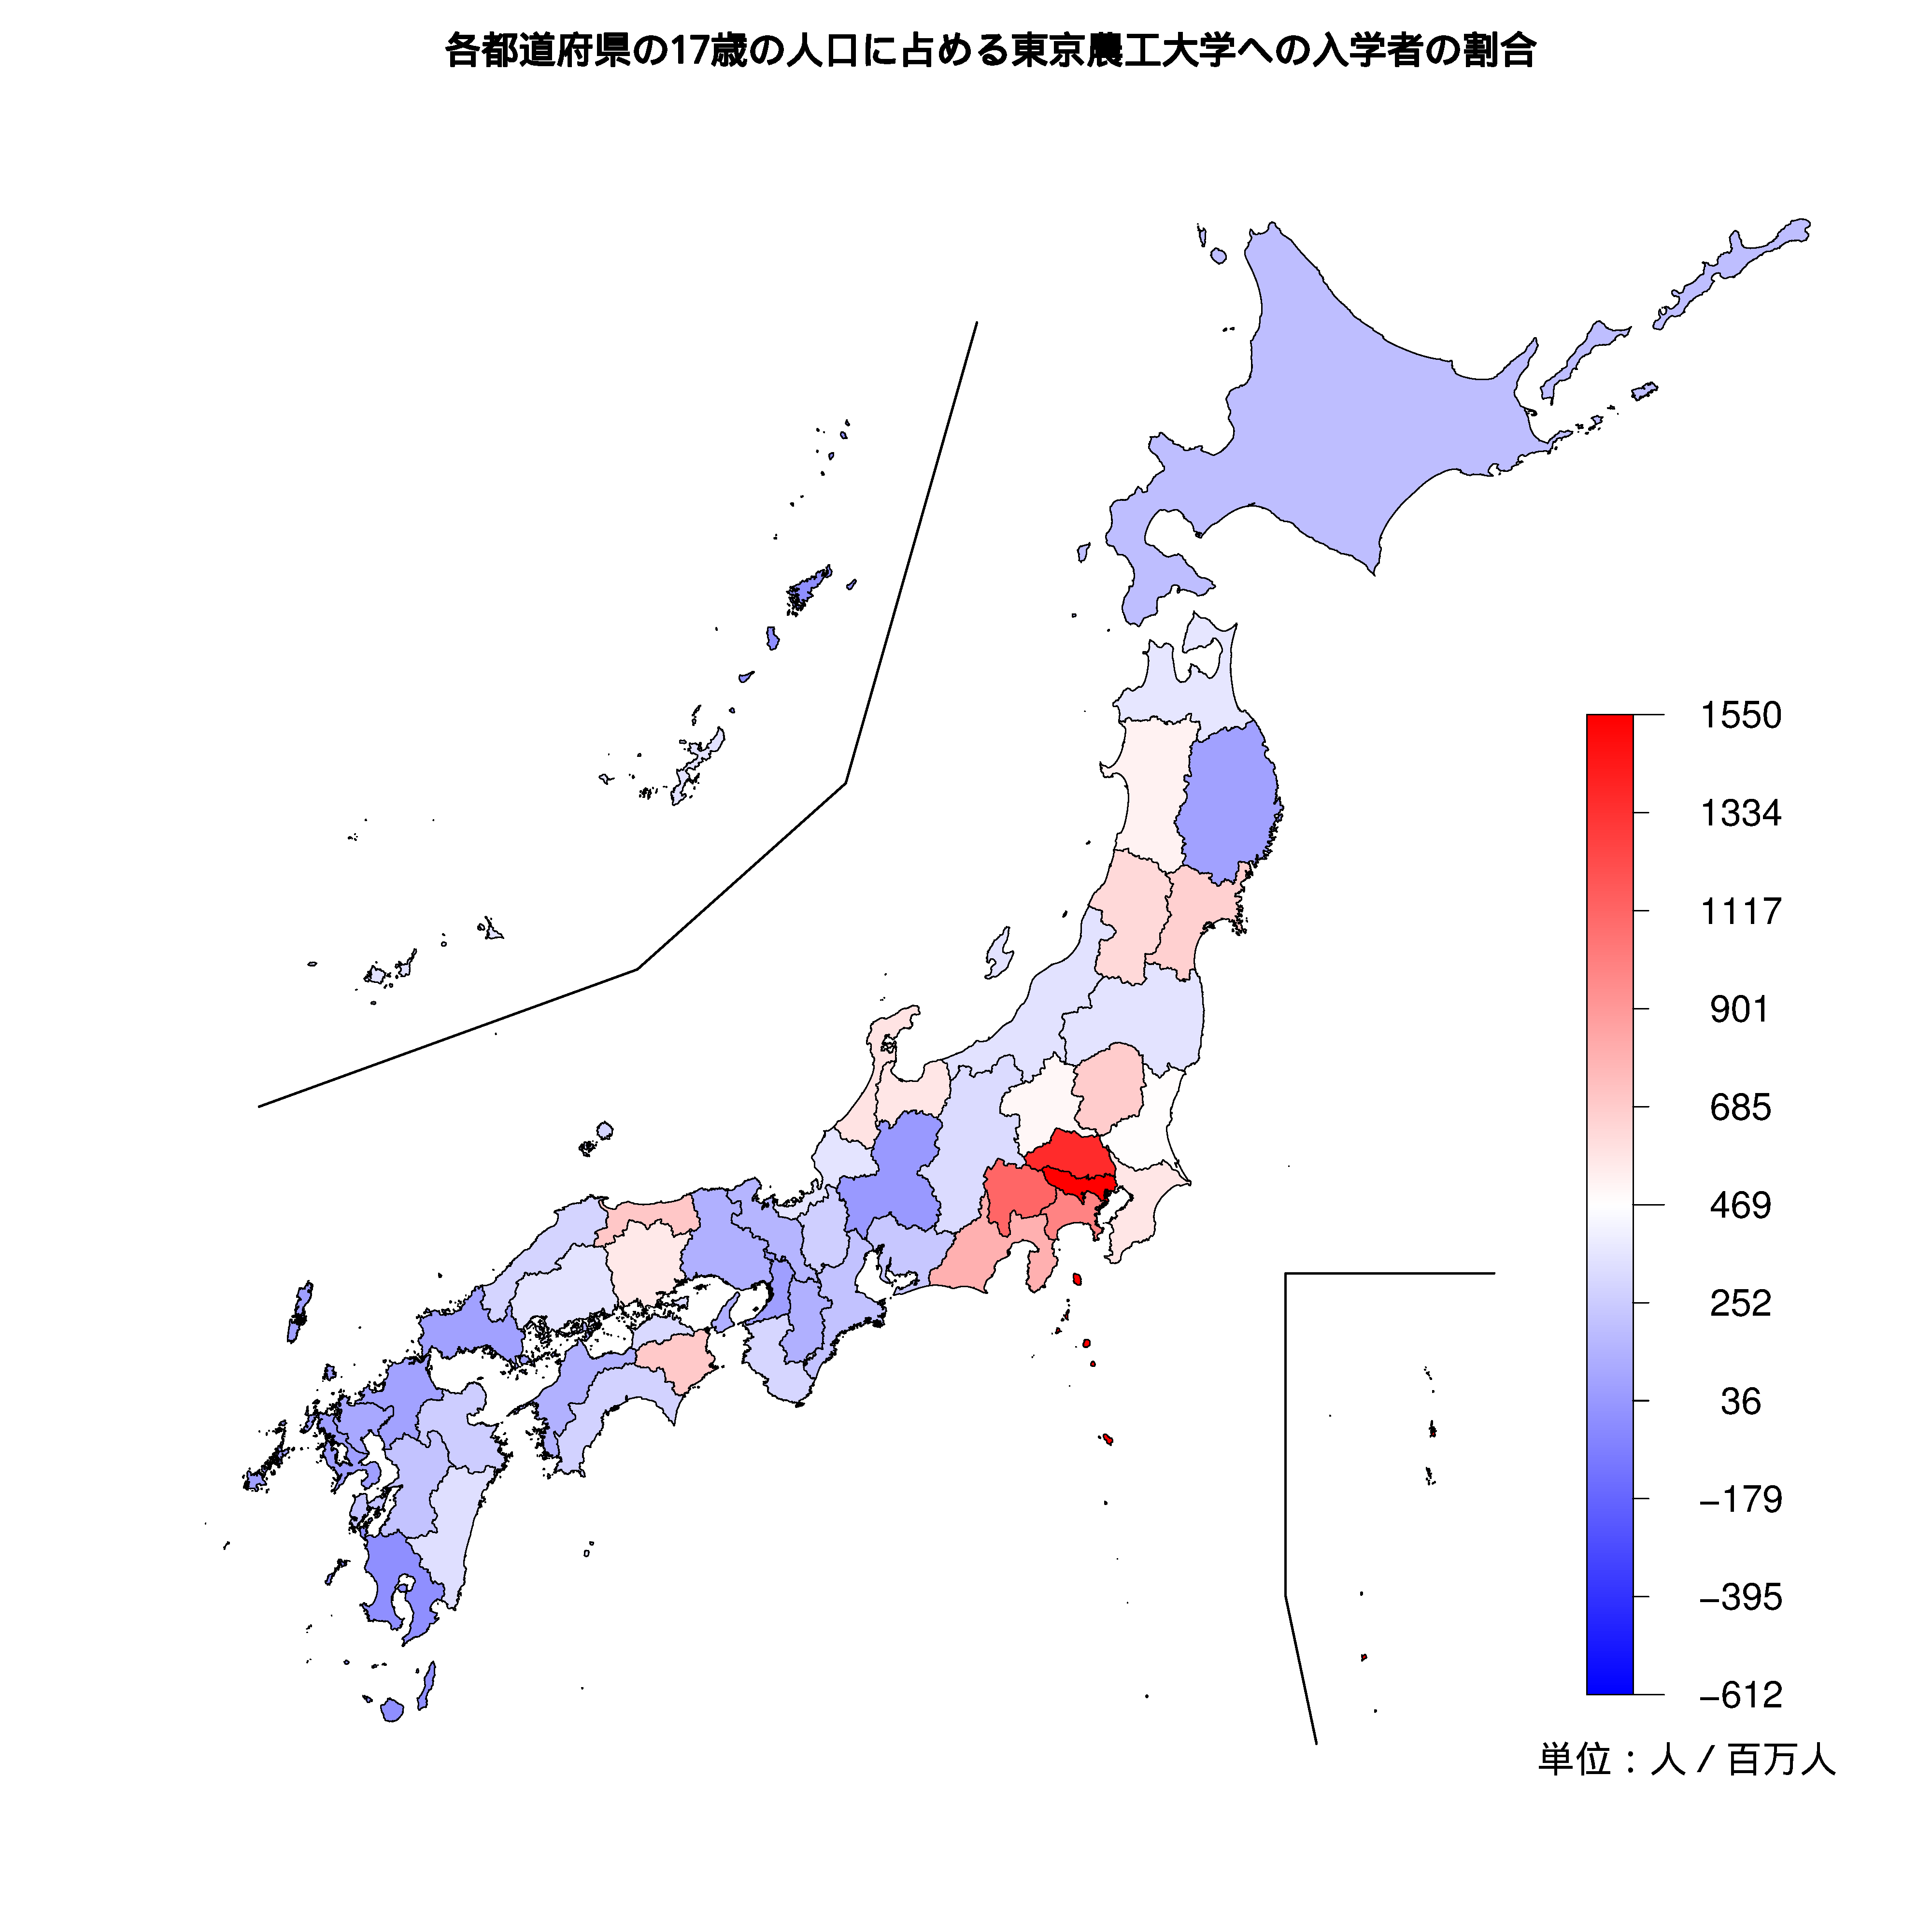 東京農工大学への入学者が多い都道府県の色分け地図